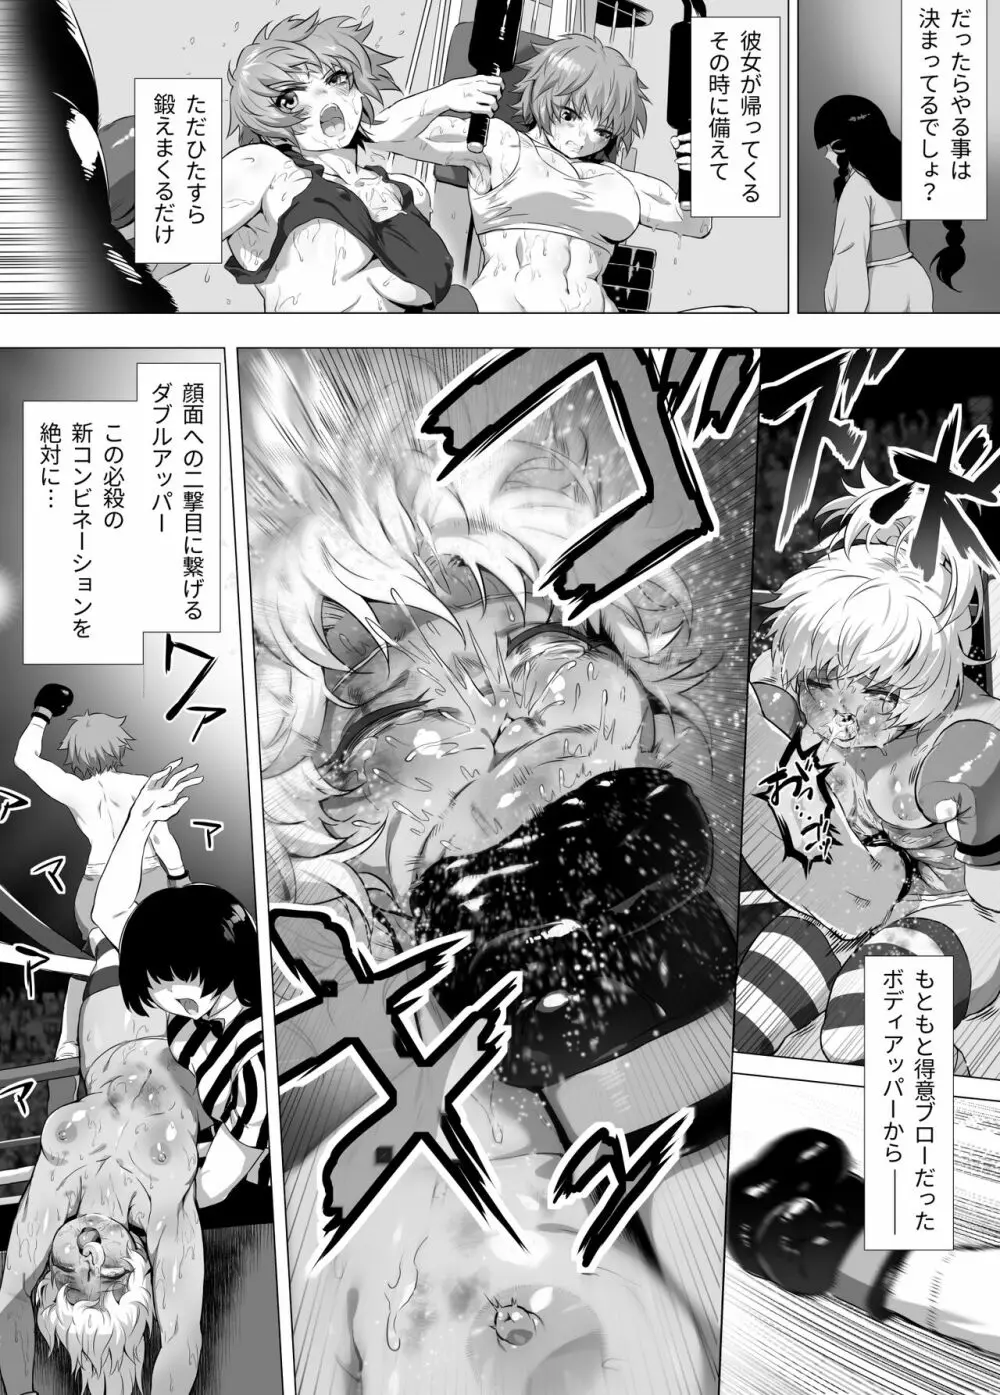 マヒロSTANDUP!漫画編 ～新たなる強敵⁉拳闘撫子ユズキ見参‼～ 15ページ